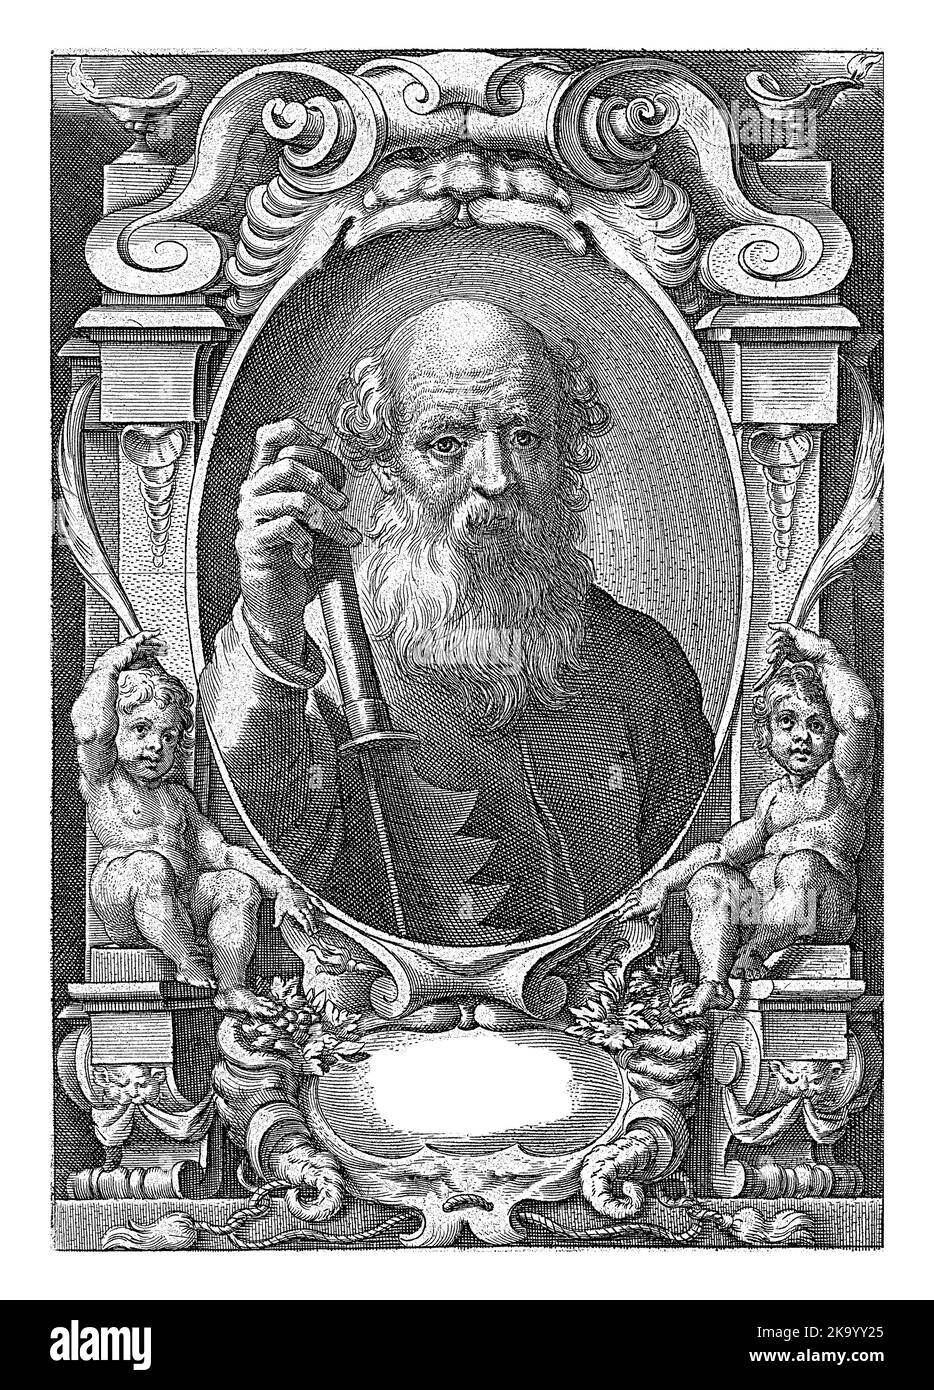 L'apôtre Simon Zelotes avec une scie dans un cadre aux ornements architecturaux, Jan-Baptist Barbé, d'après Théodoor van Loon, 1588 - 1648 Banque D'Images